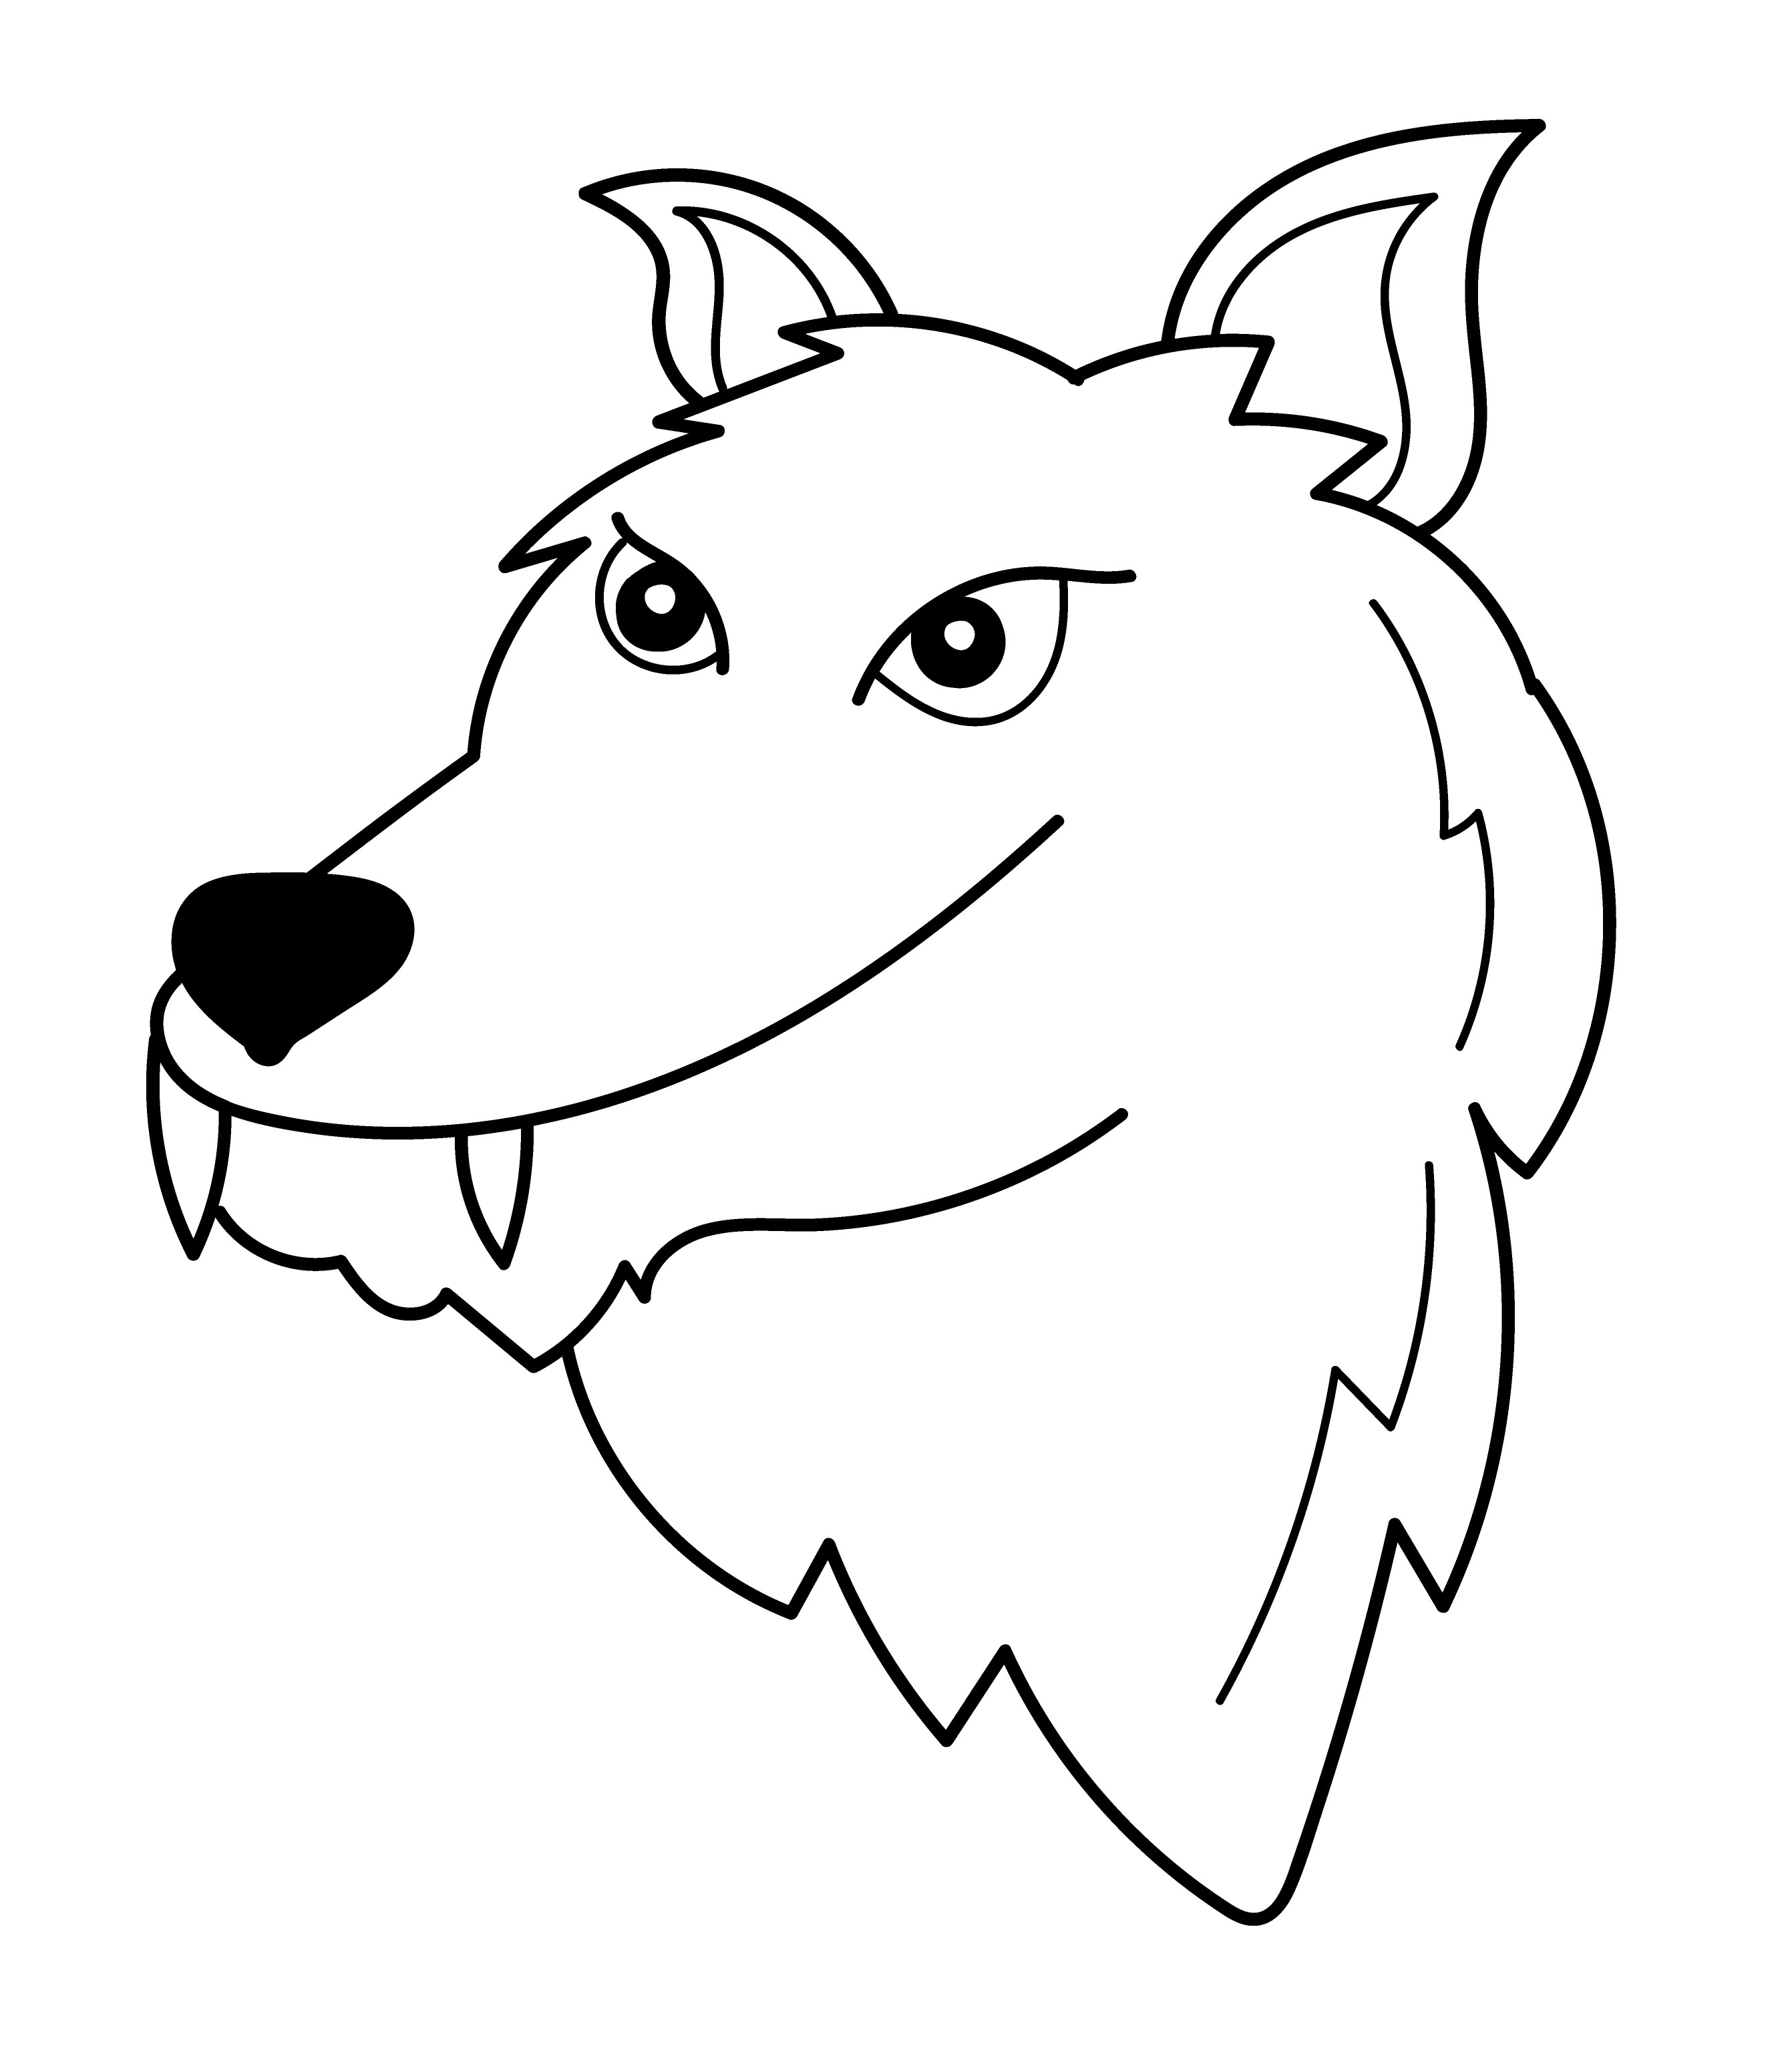 Раскраска голова волка с клыками формата А4 в высоком качестве